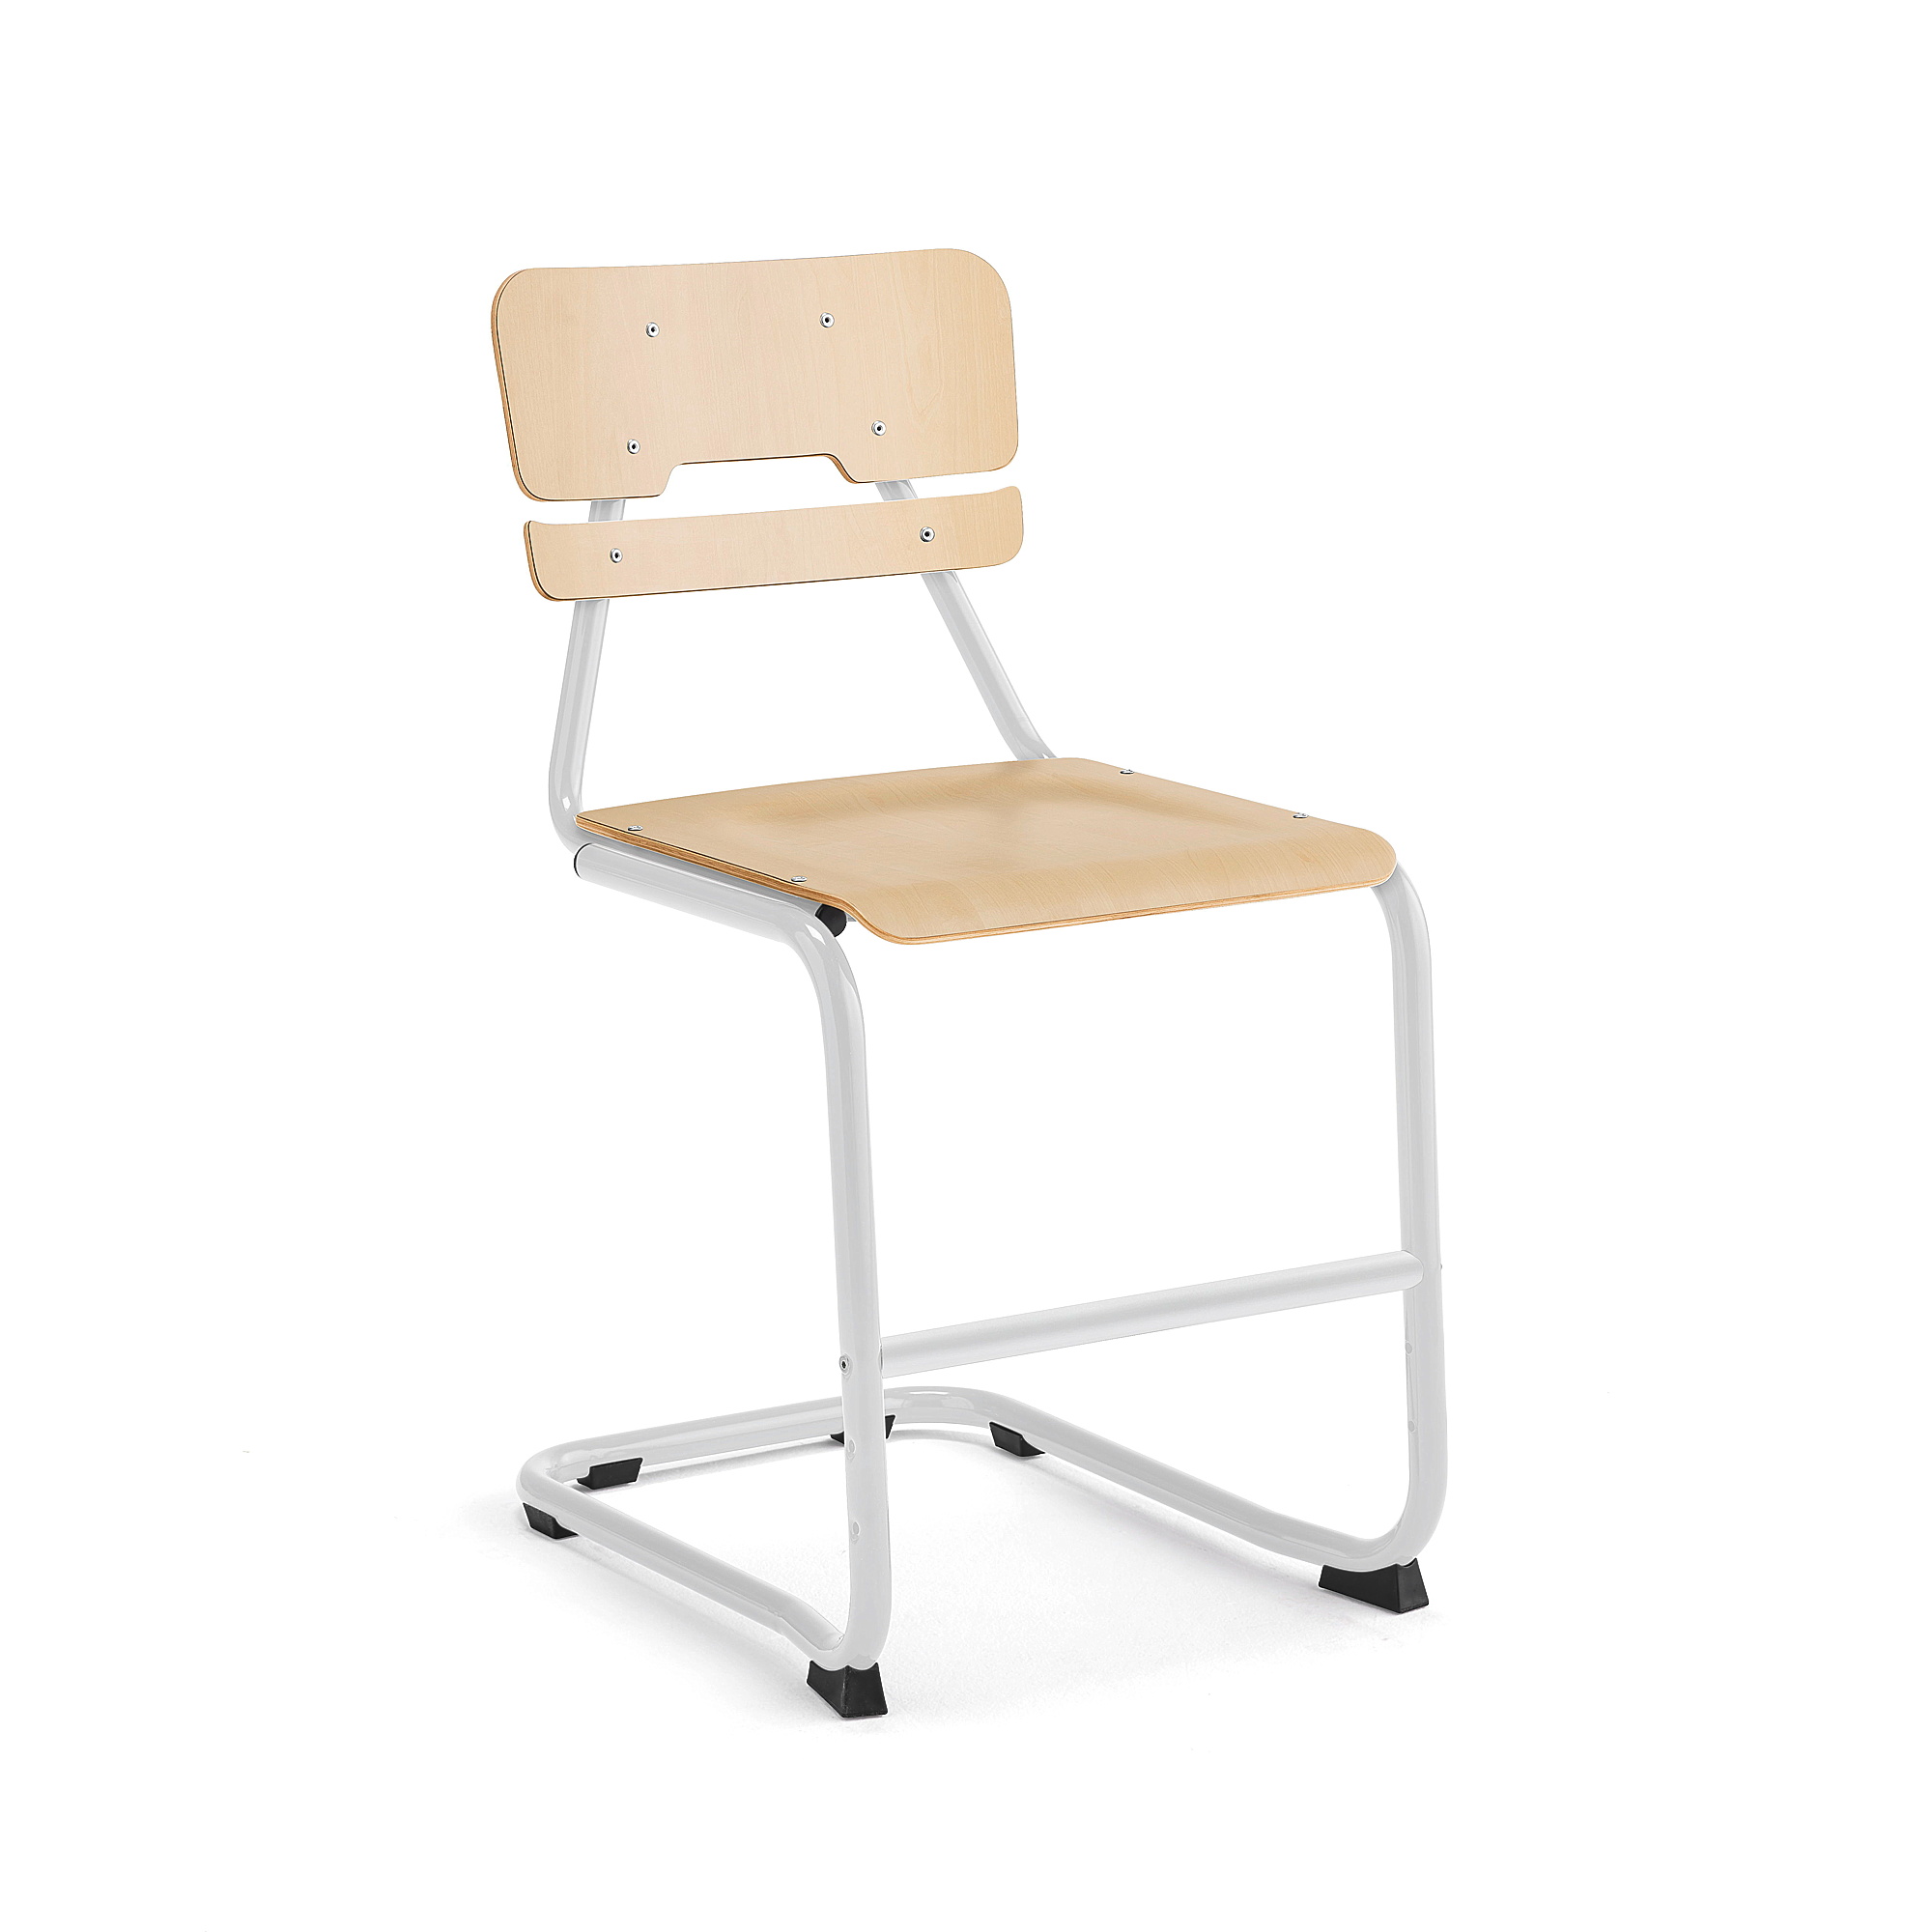 Školní židle LEGERE II, výška 500 mm, bílá, bříza